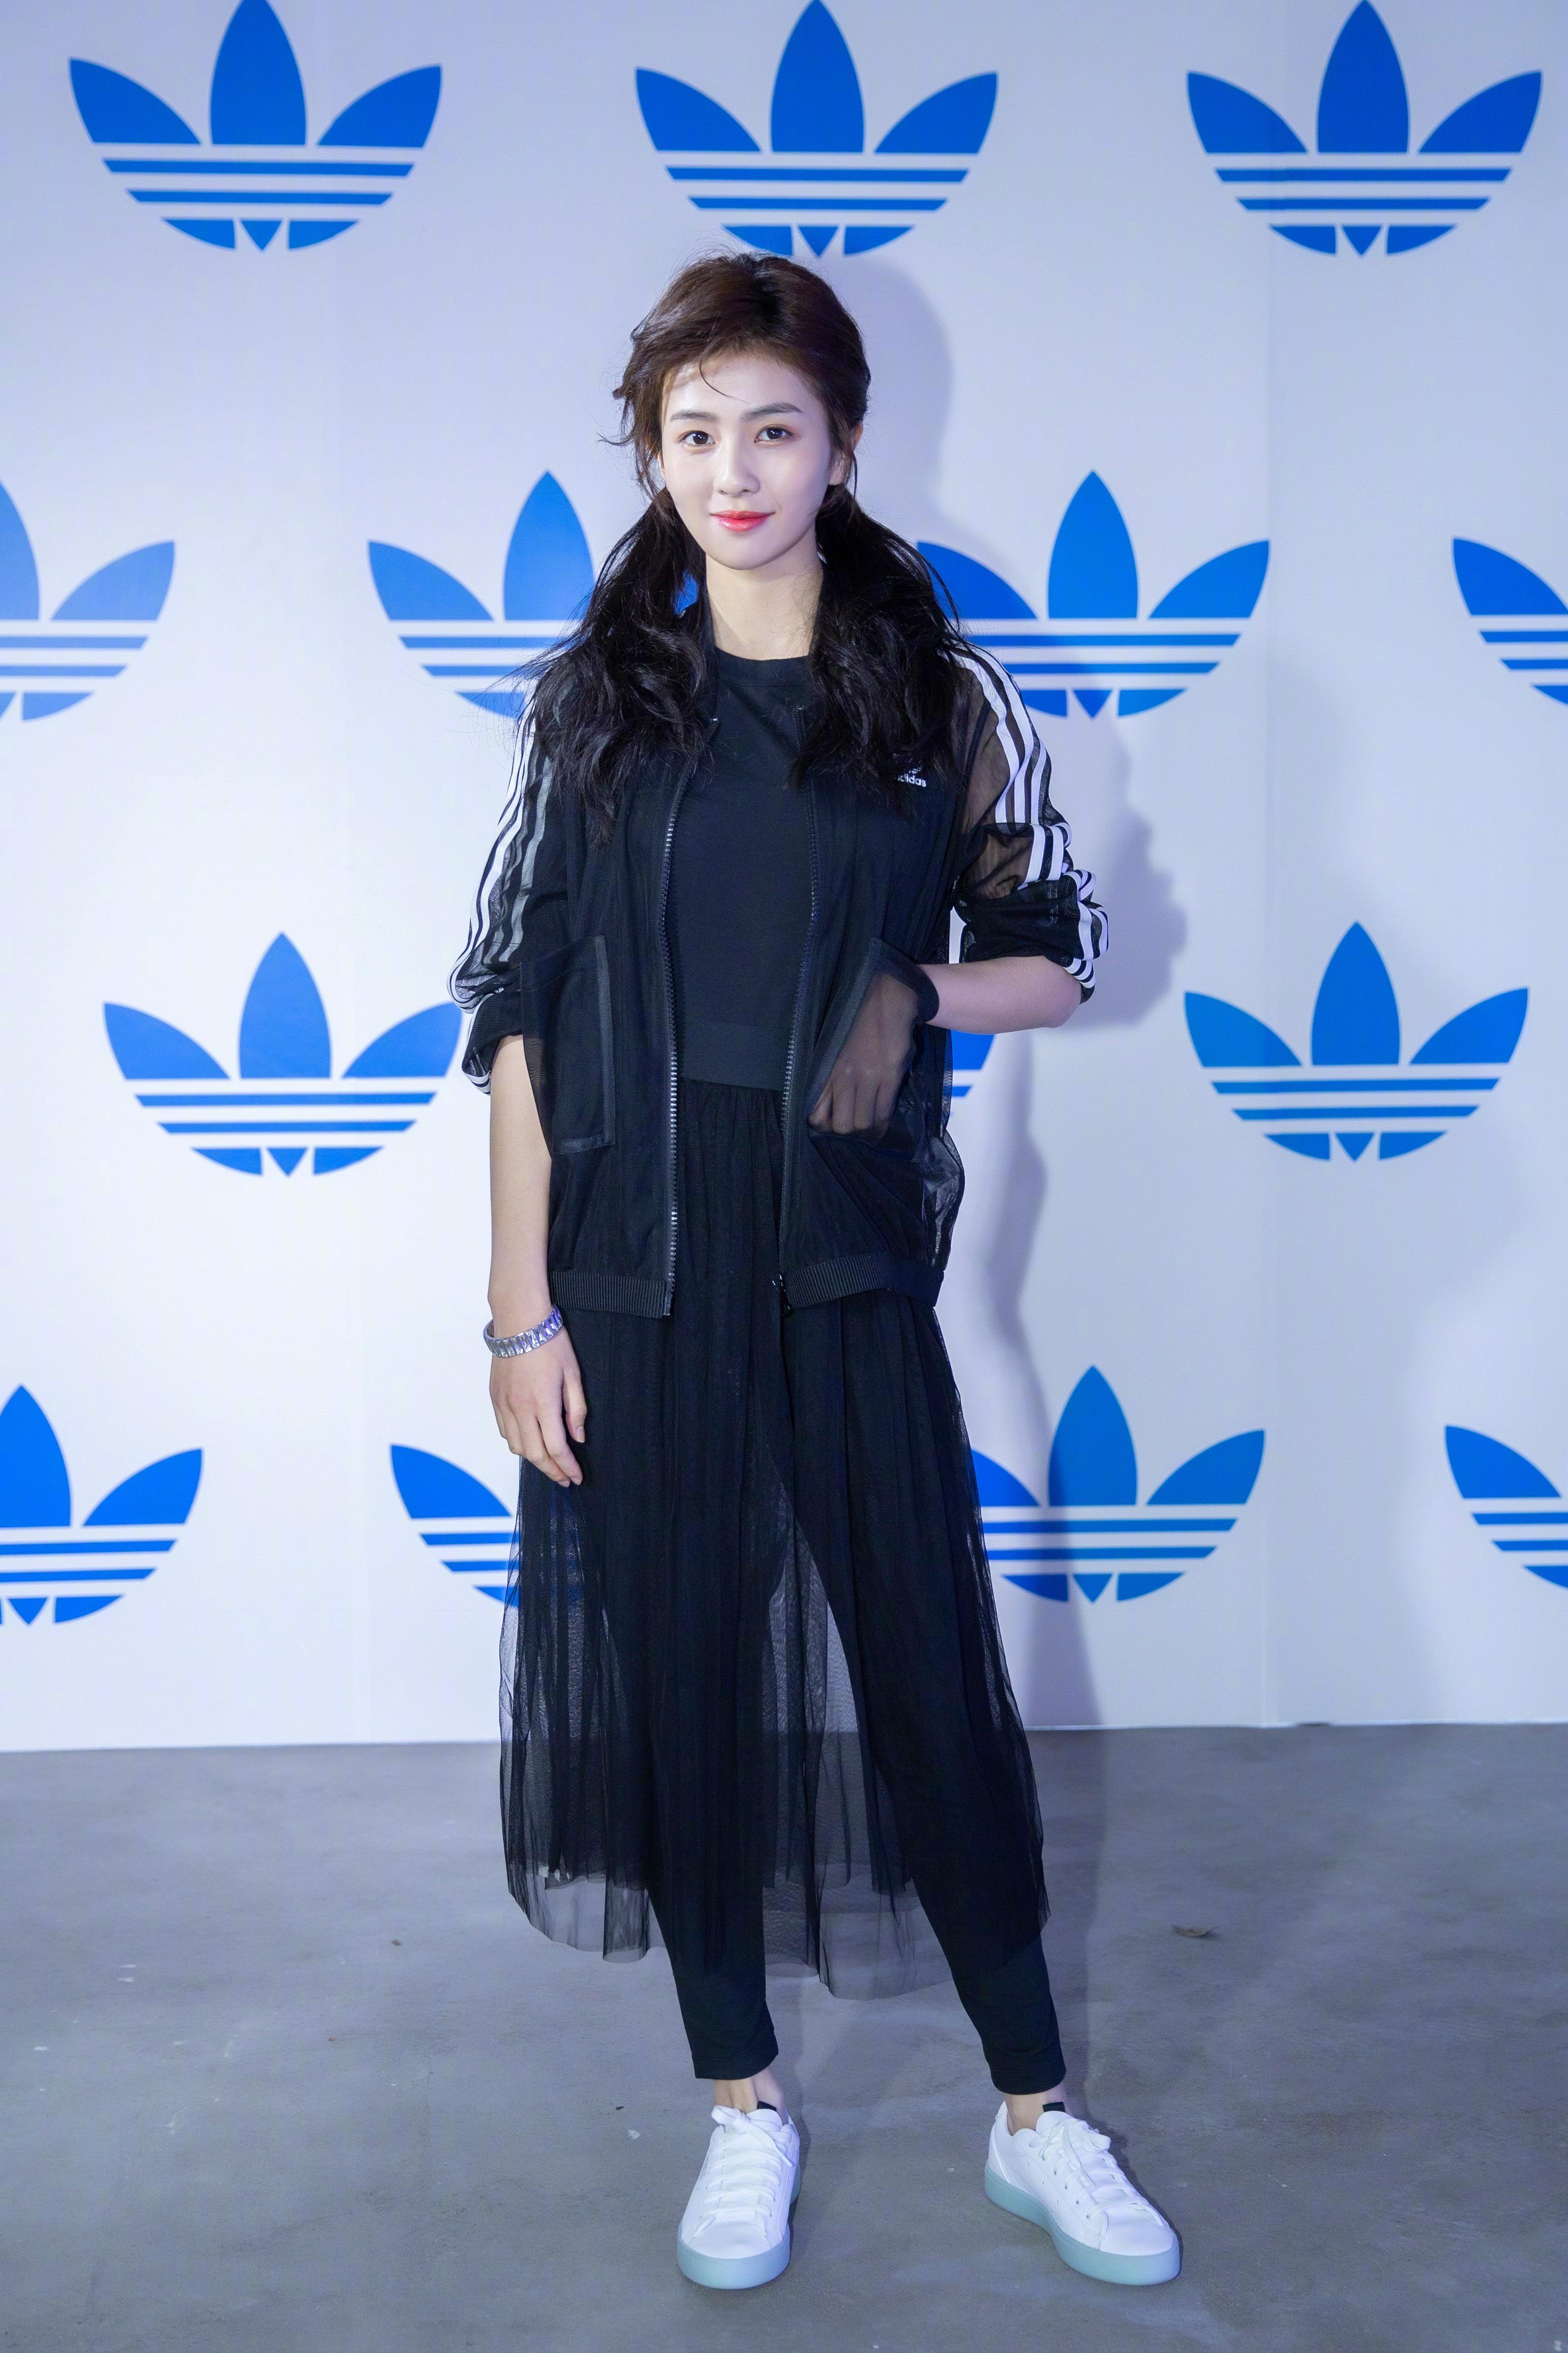 美女演员白鹿受邀出席Adidas Originals全新sleek系列开幕活动 一袭黑色轻纱亮相,